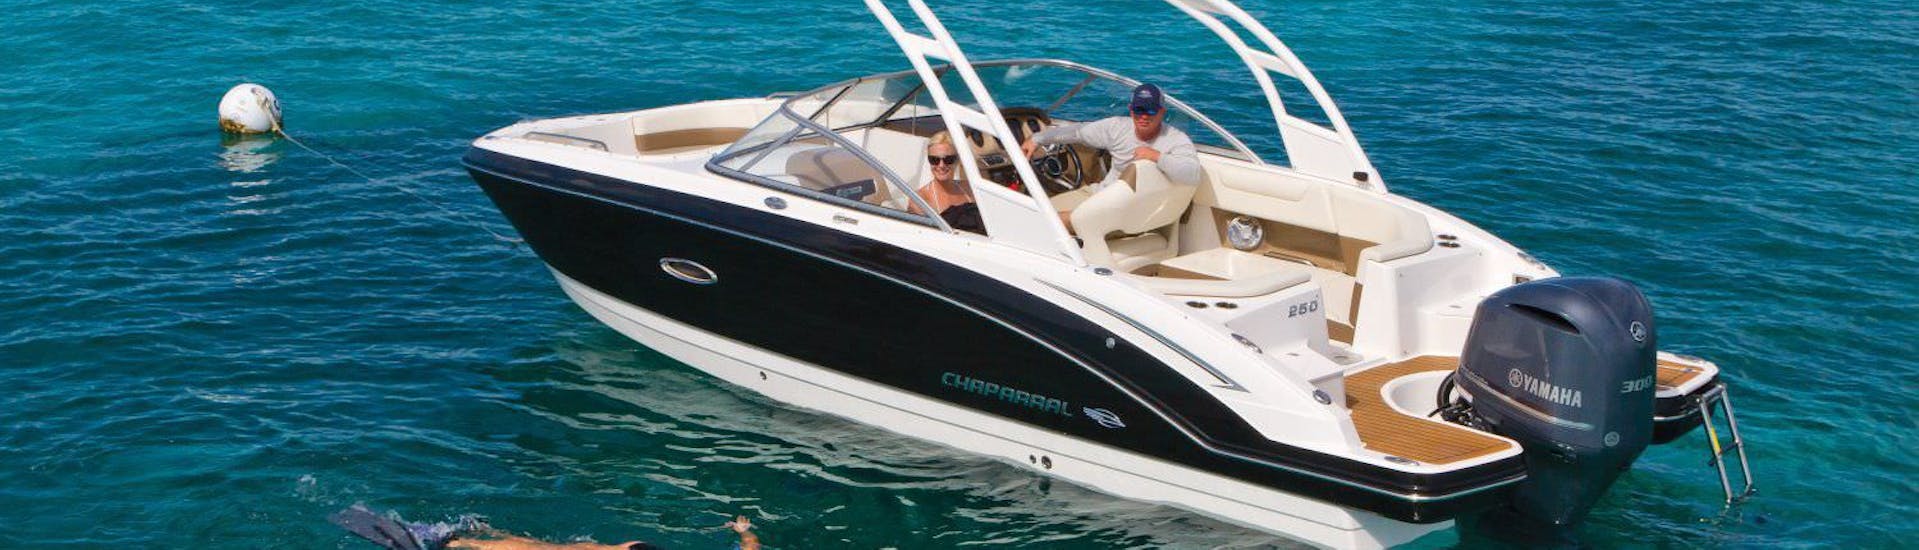 Es Vedra Charter Ibiza luxe bootverhuur voor maximaal 12 personen die rond San Antonio varen.